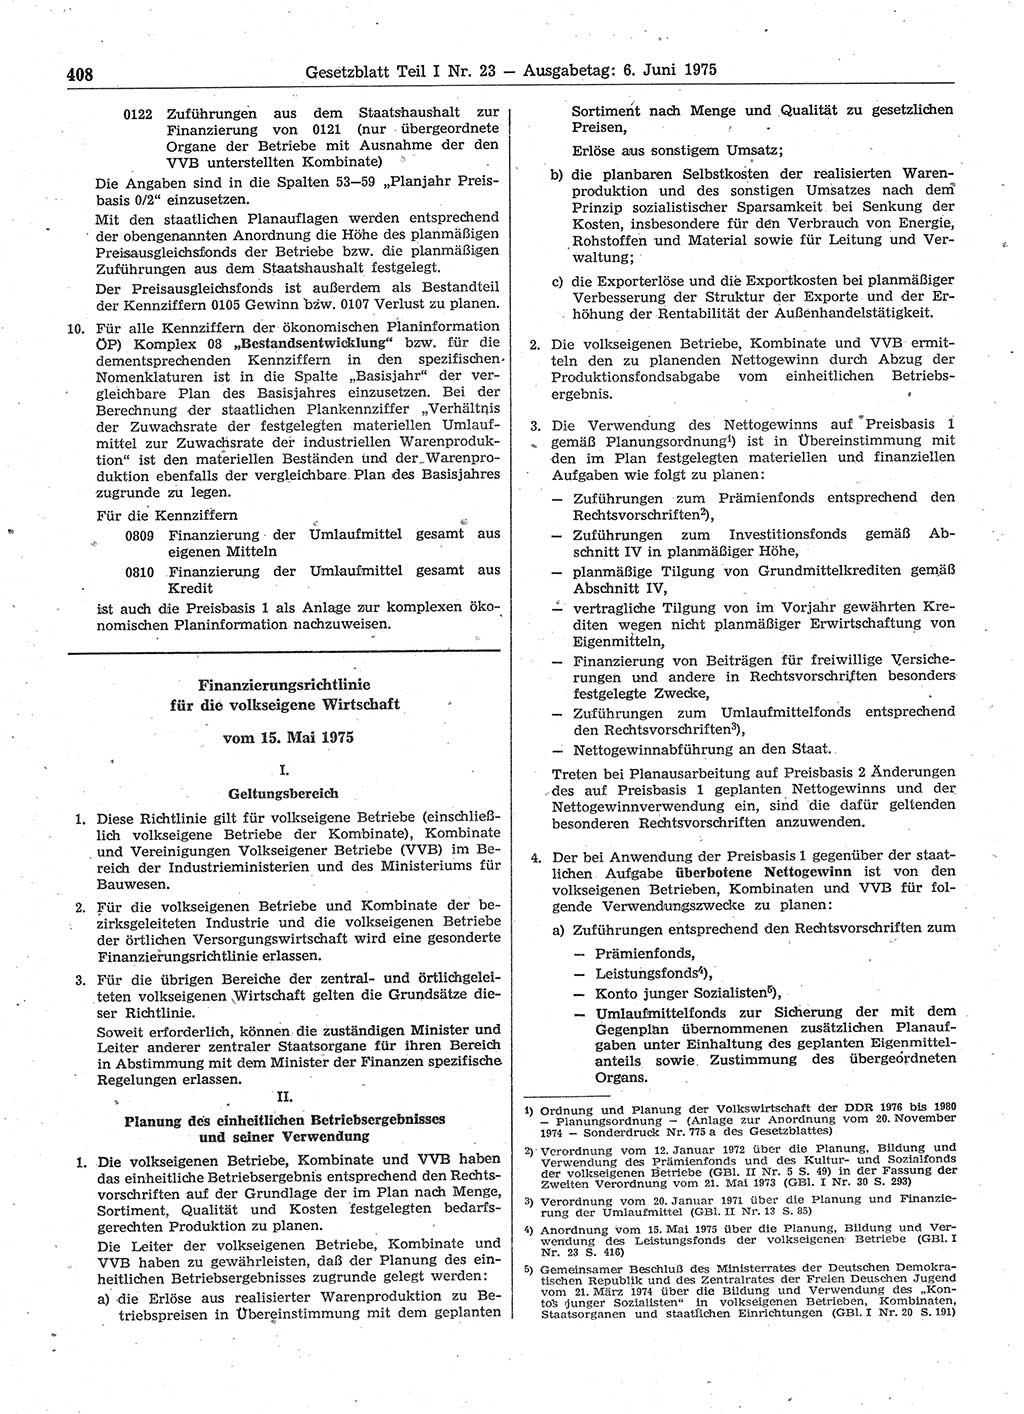 Gesetzblatt (GBl.) der Deutschen Demokratischen Republik (DDR) Teil Ⅰ 1975, Seite 408 (GBl. DDR Ⅰ 1975, S. 408)